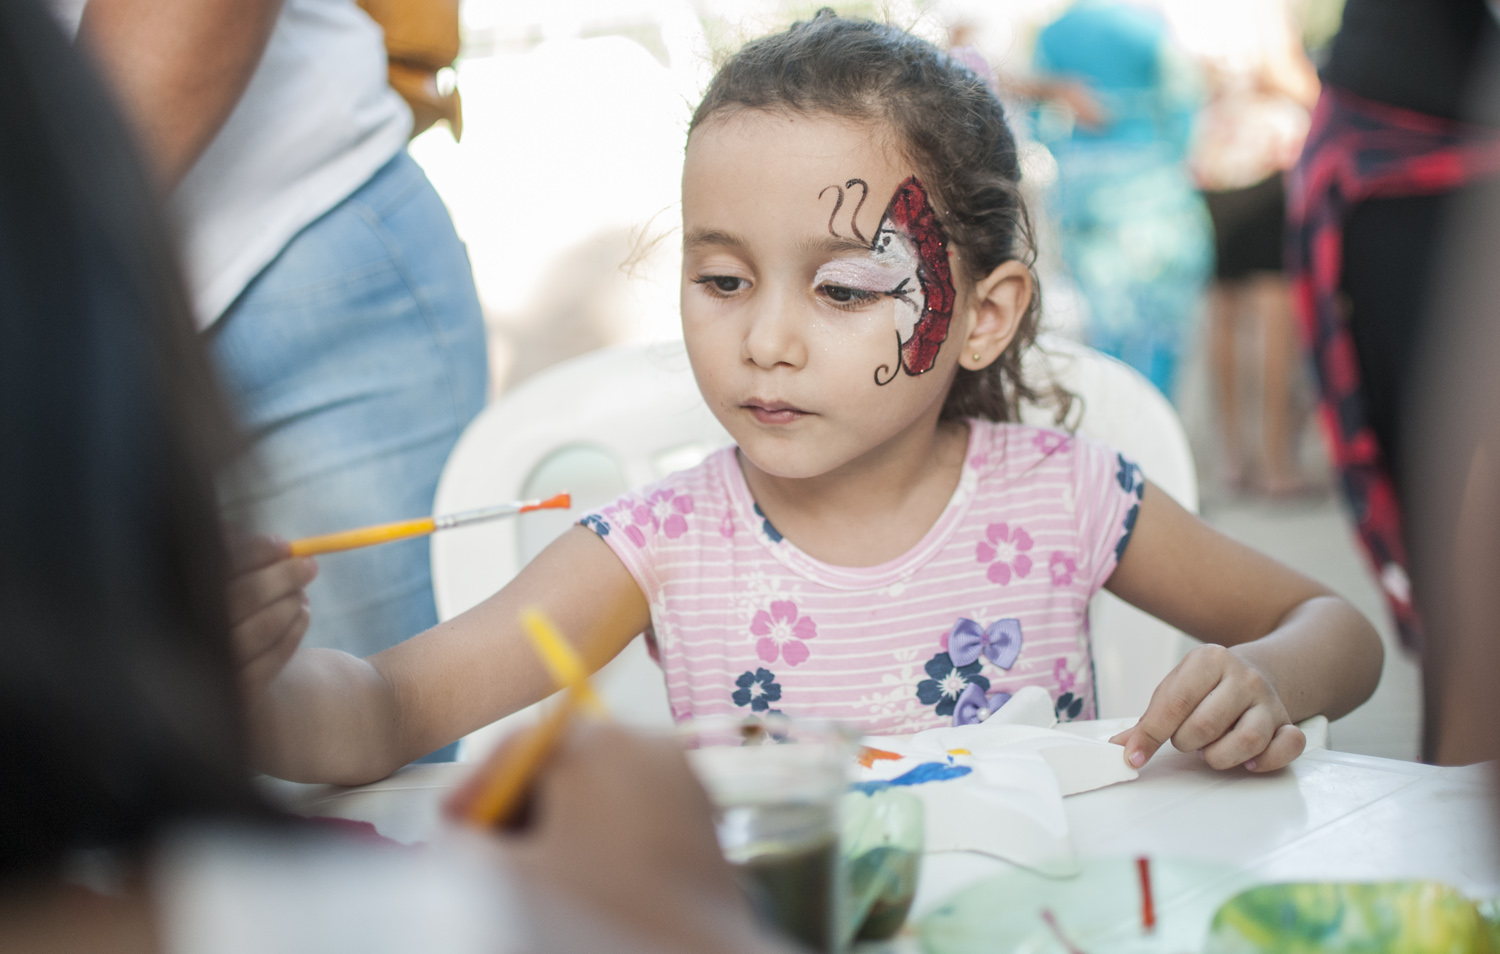 A iniciativa foi promovida pelo Governo do Ceará, por meio do Programa Mais Infância Ceará, em parceria com a Prefeitura de Fortaleza, através do Programa Fortaleza Amiga da Criança